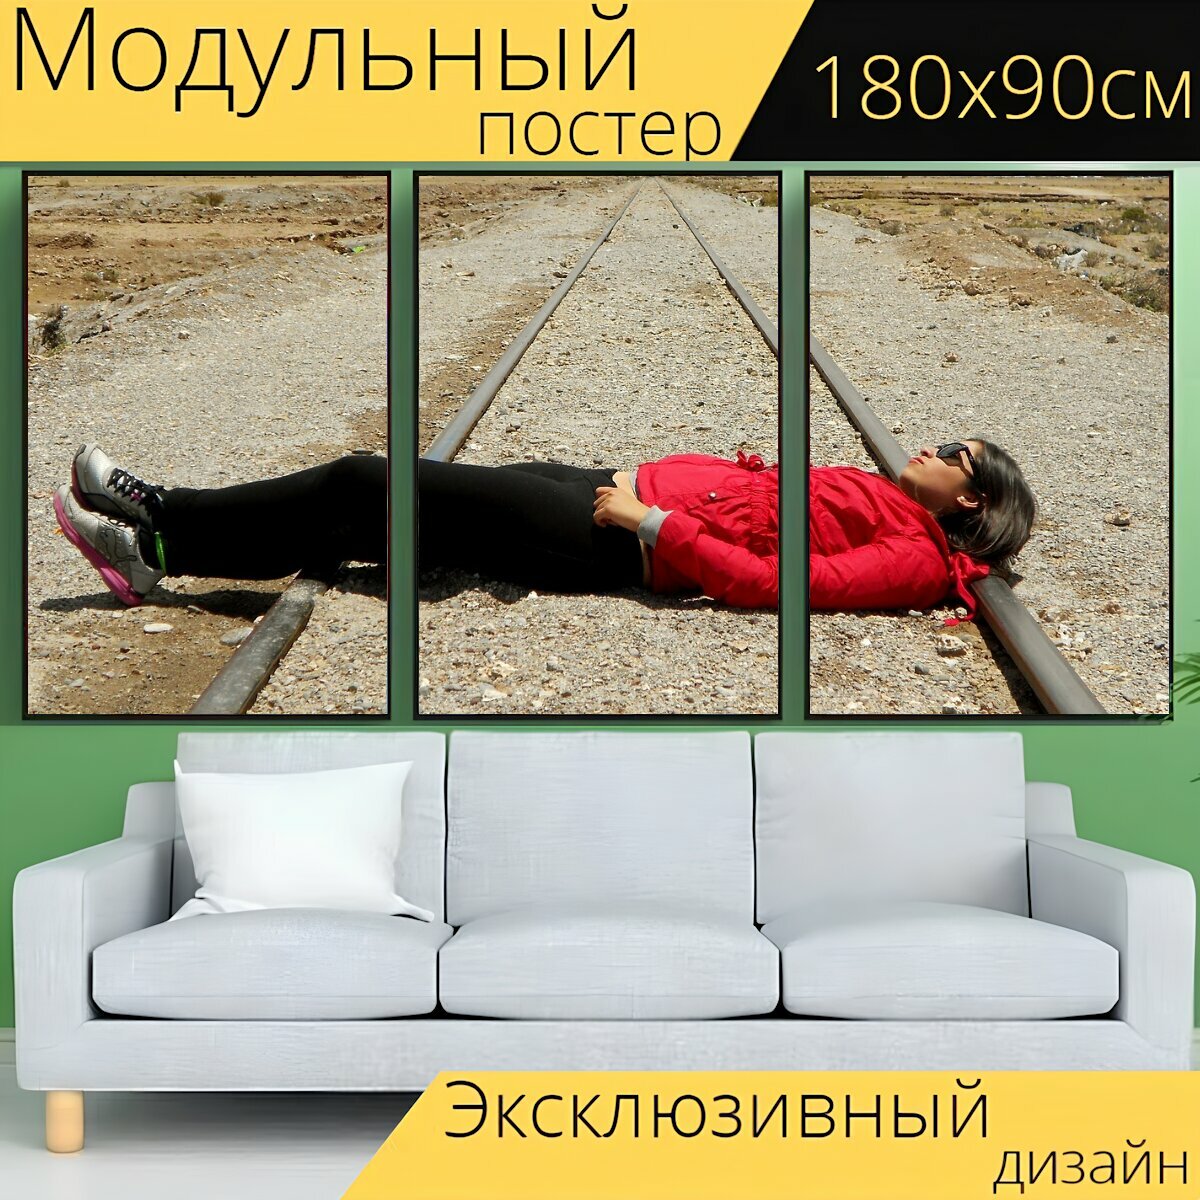 Модульный постер "Женщина, поезд, треки" 180 x 90 см. для интерьера